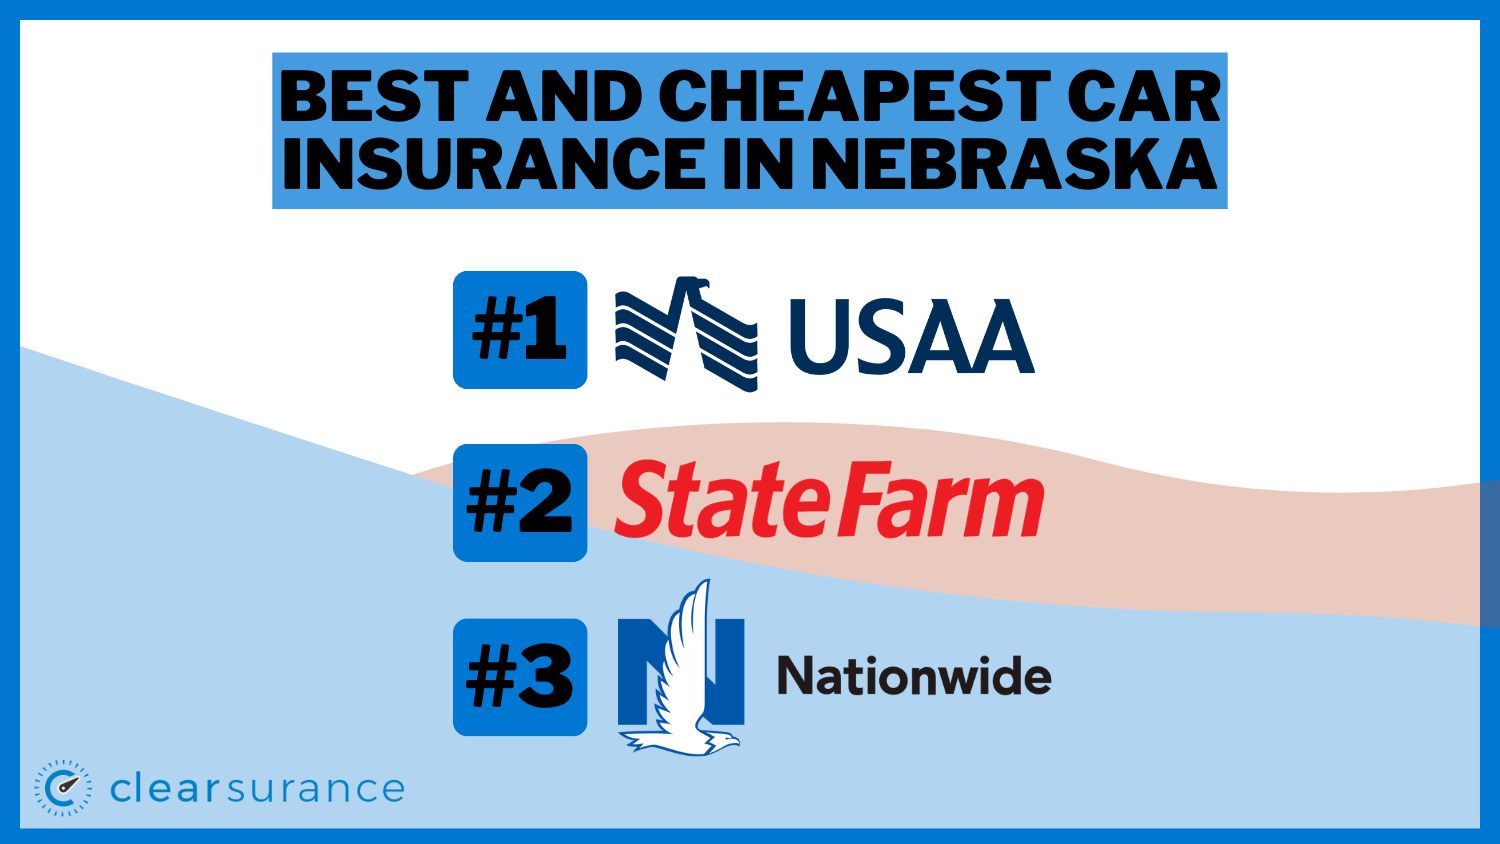 Best and Cheapest Car Insurance in Nebraska